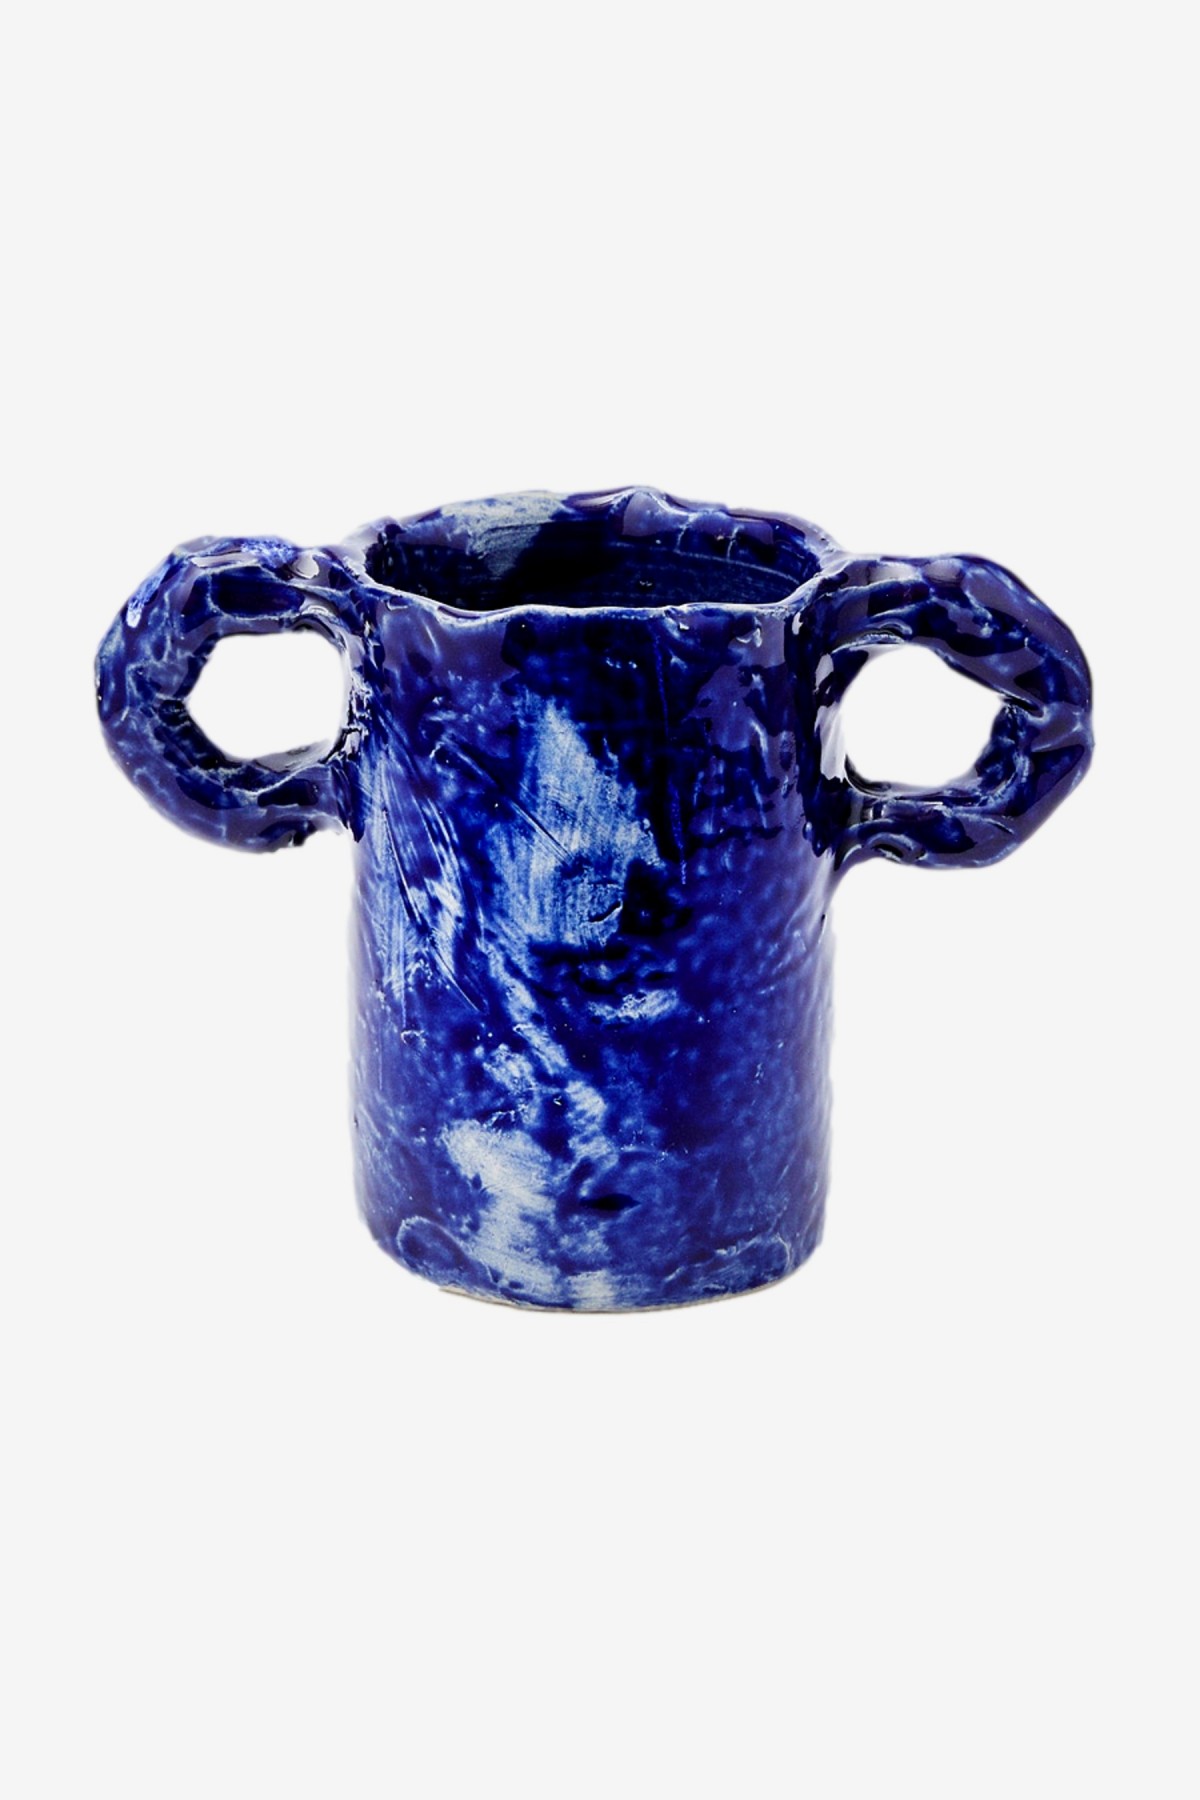 Niko June Studio Vase in Dark Blue